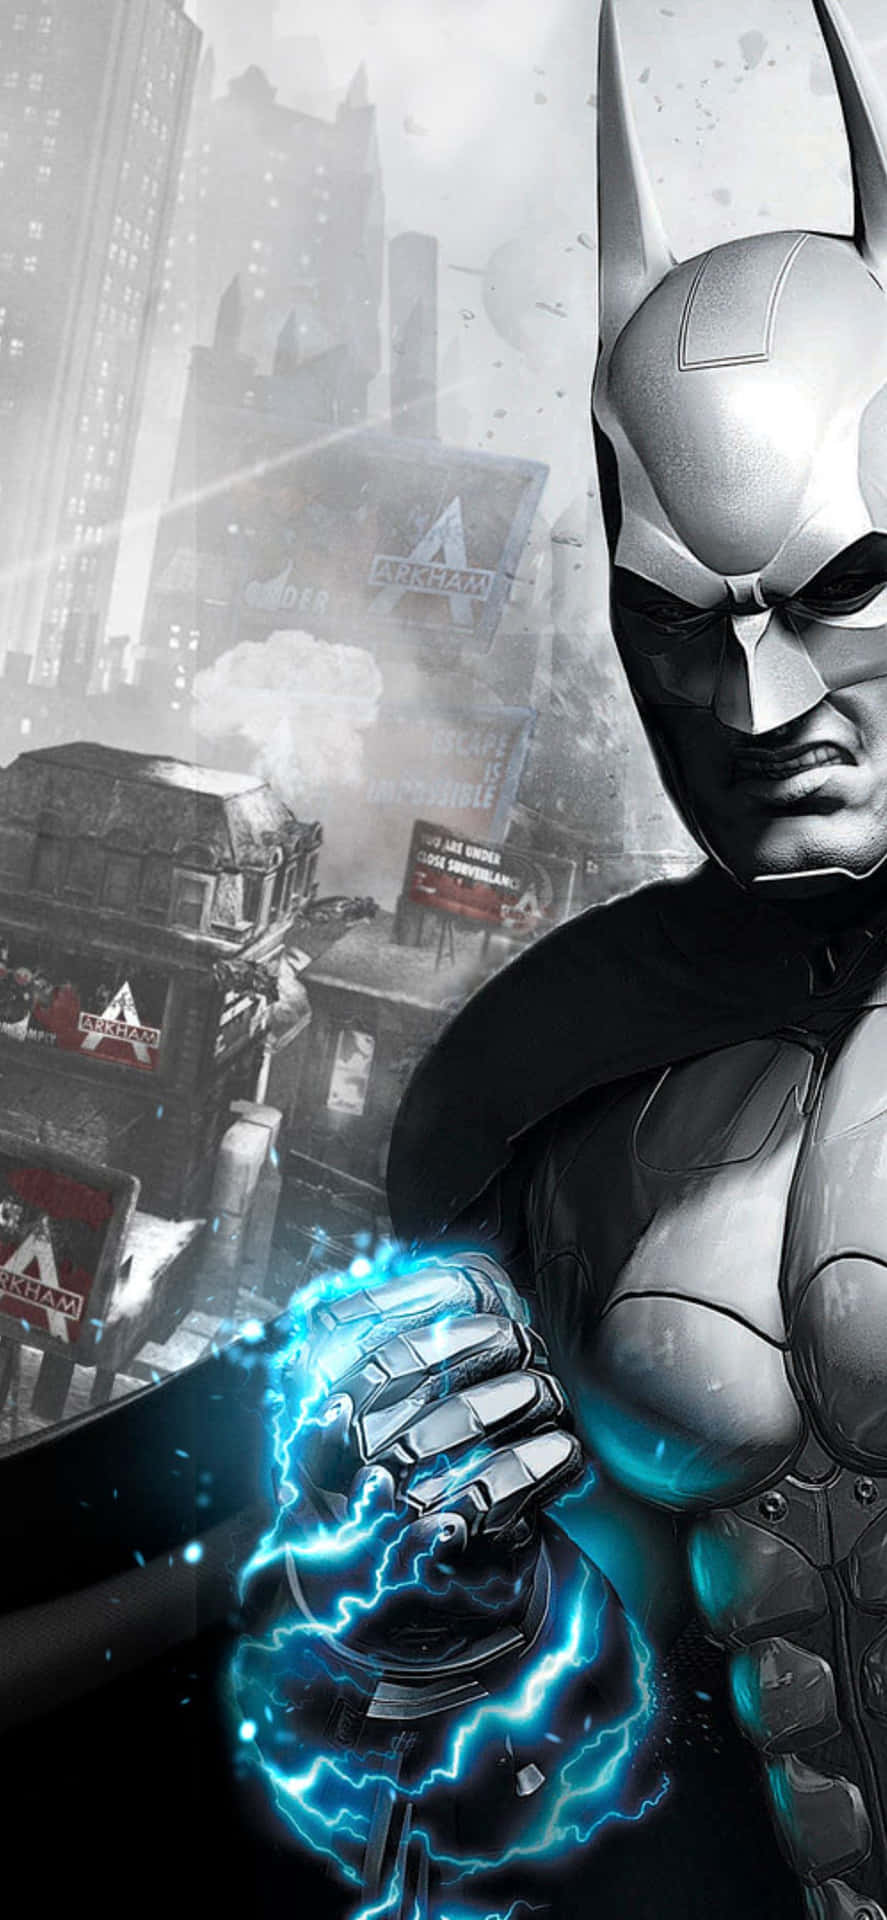 Görmörkret Till Ditt Med Iphone Xs Max Batman Arkham City